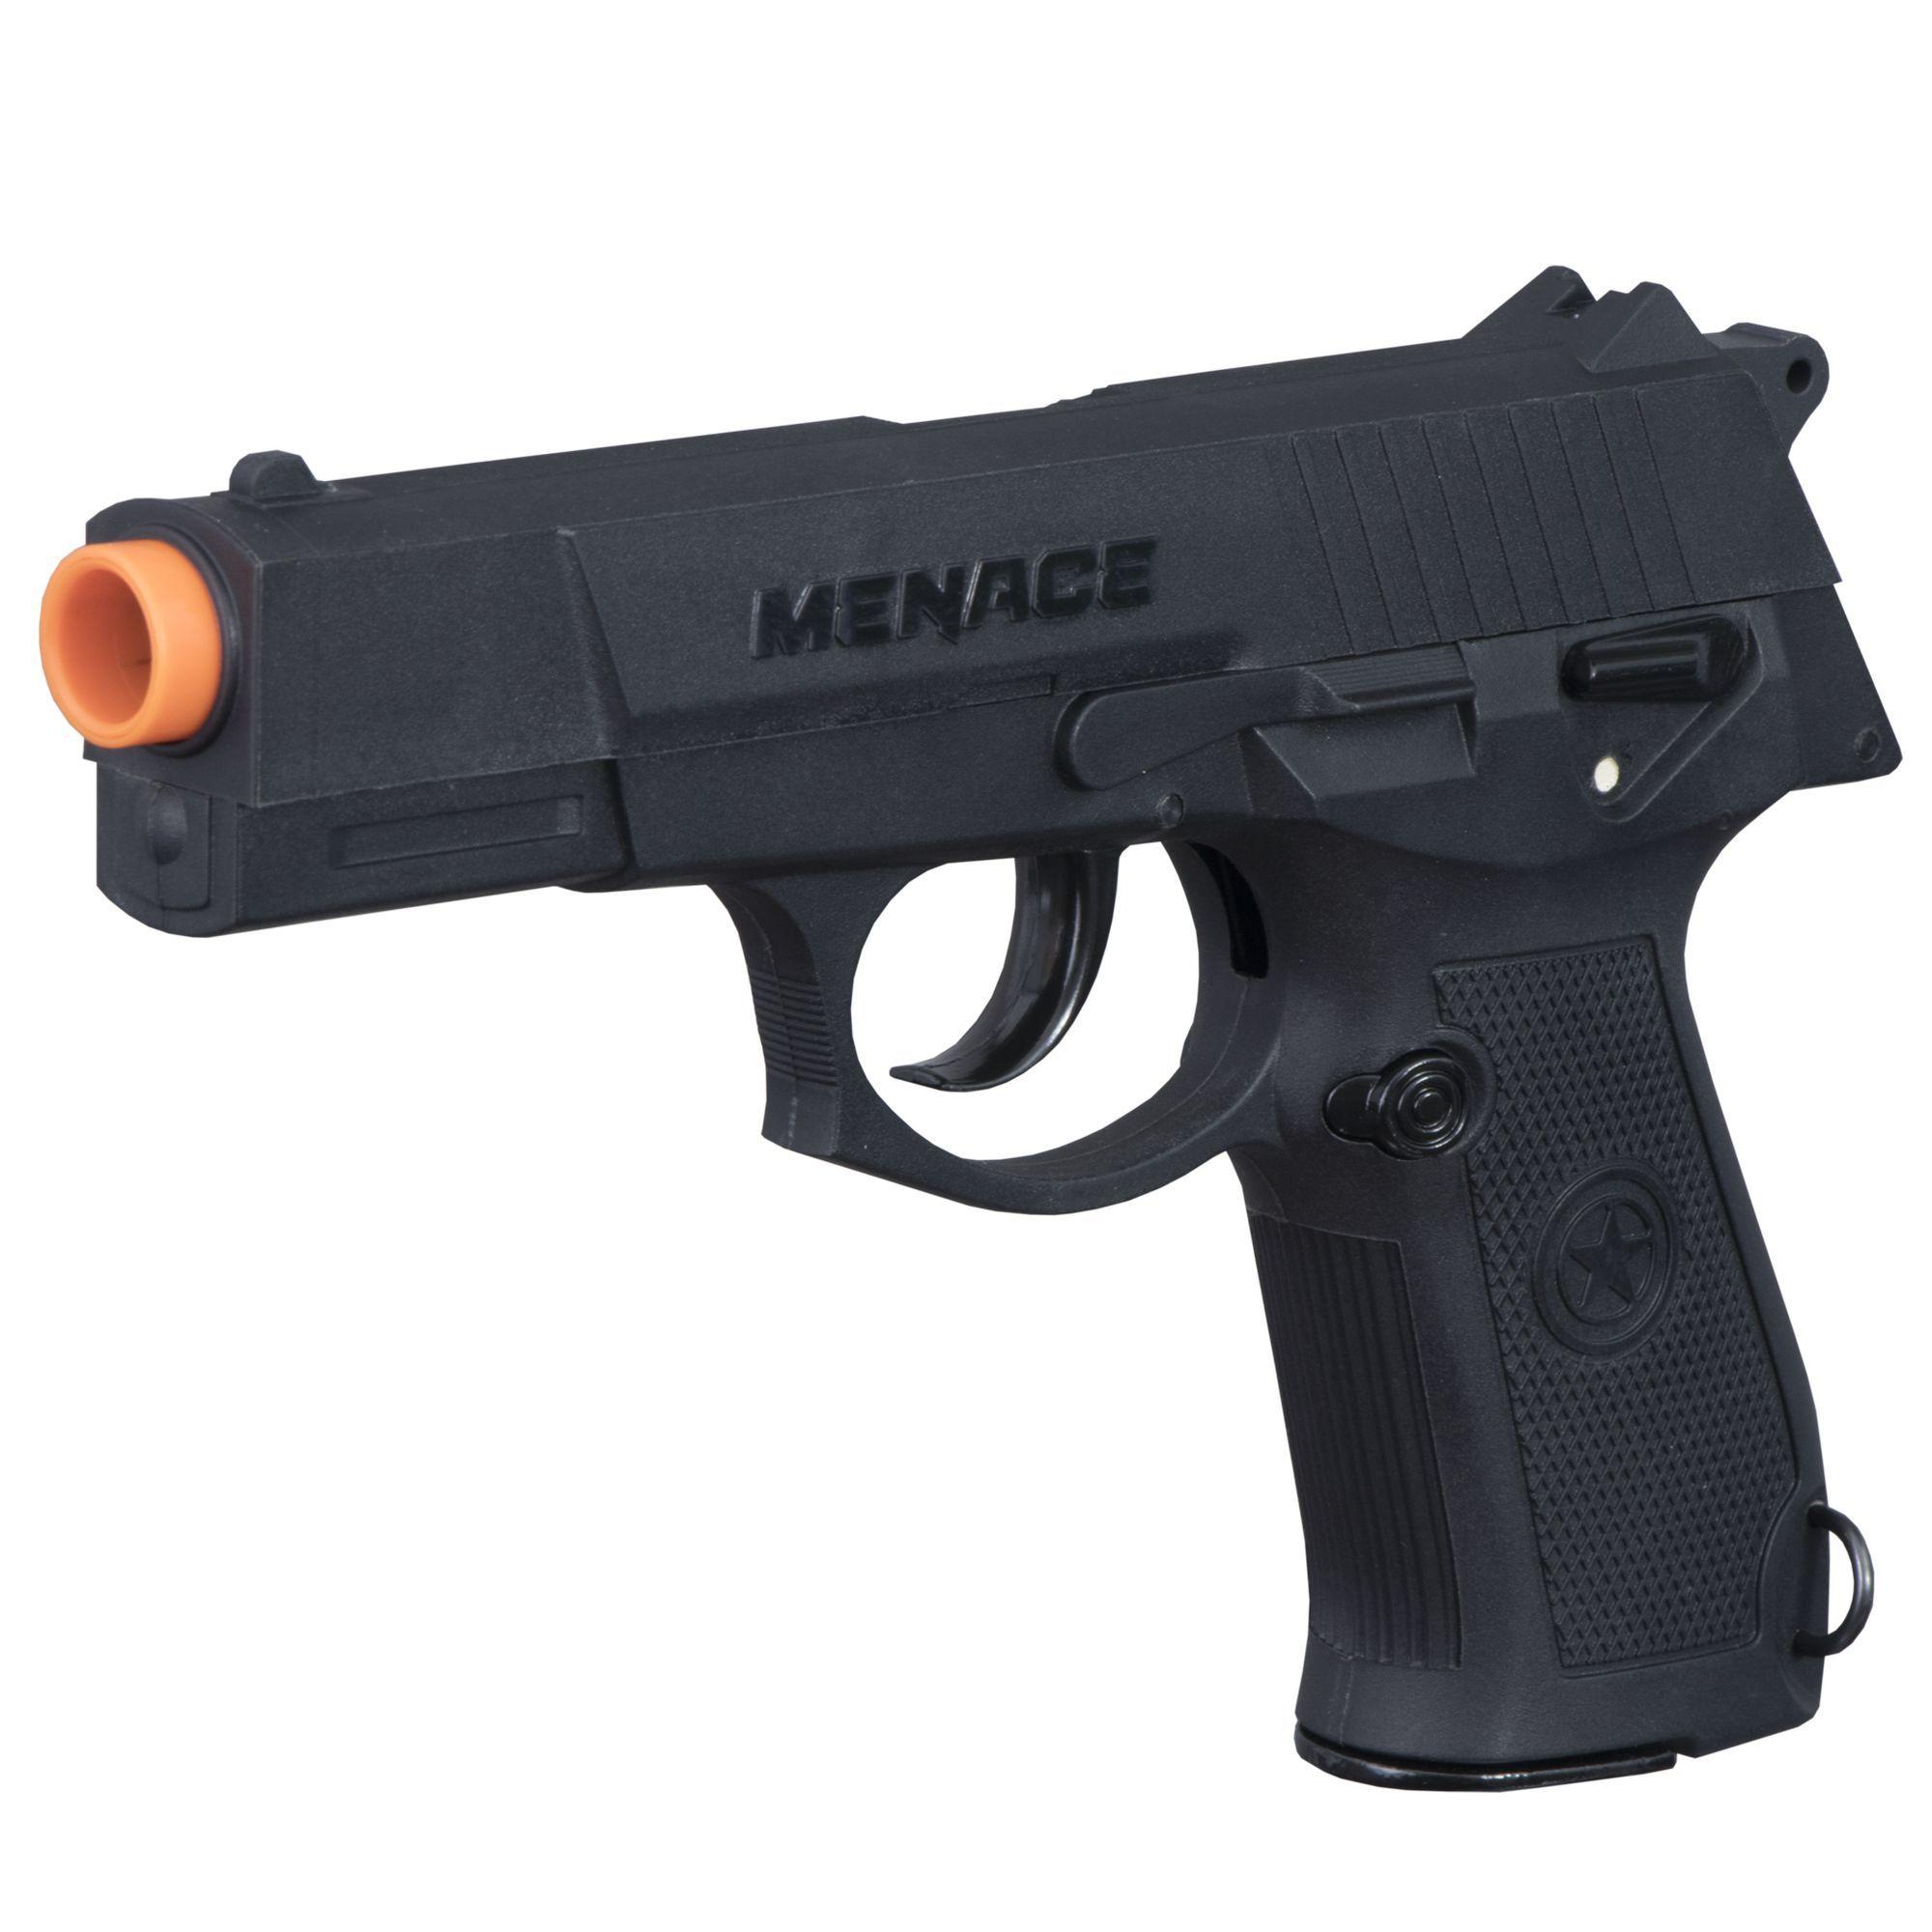 Tippmann Menace 50cal Semi-Auto Paintball Pistol 0.50